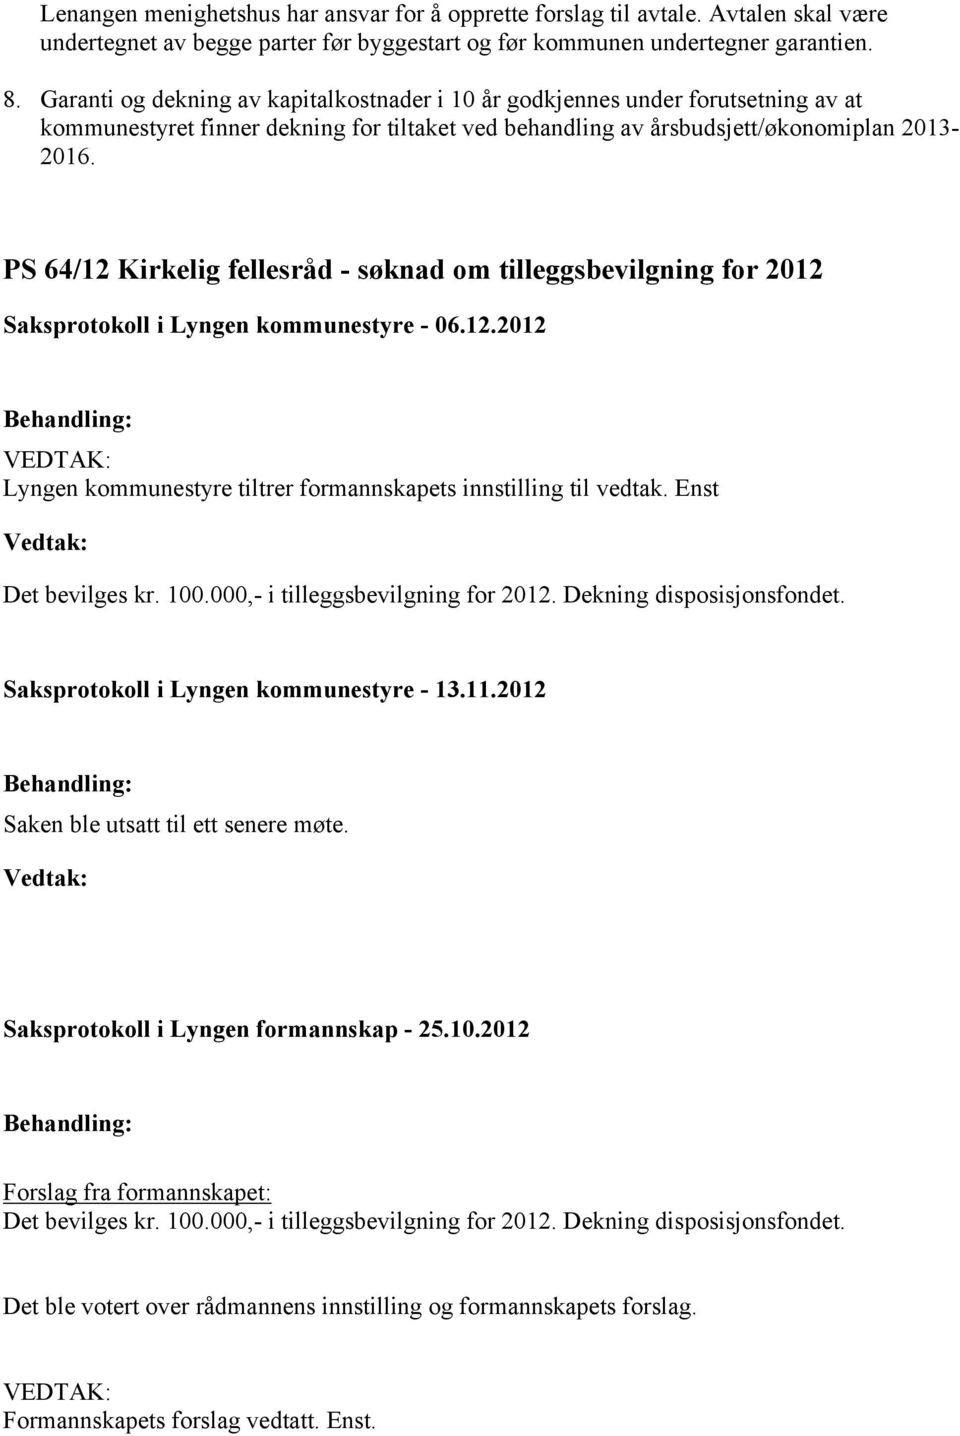 PS 64/12 Kirkelig fellesråd - søknad om tilleggsbevilgning for 2012 Lyngen kommunestyre tiltrer formannskapets innstilling til vedtak. Enst Det bevilges kr. 100.000,- i tilleggsbevilgning for 2012.